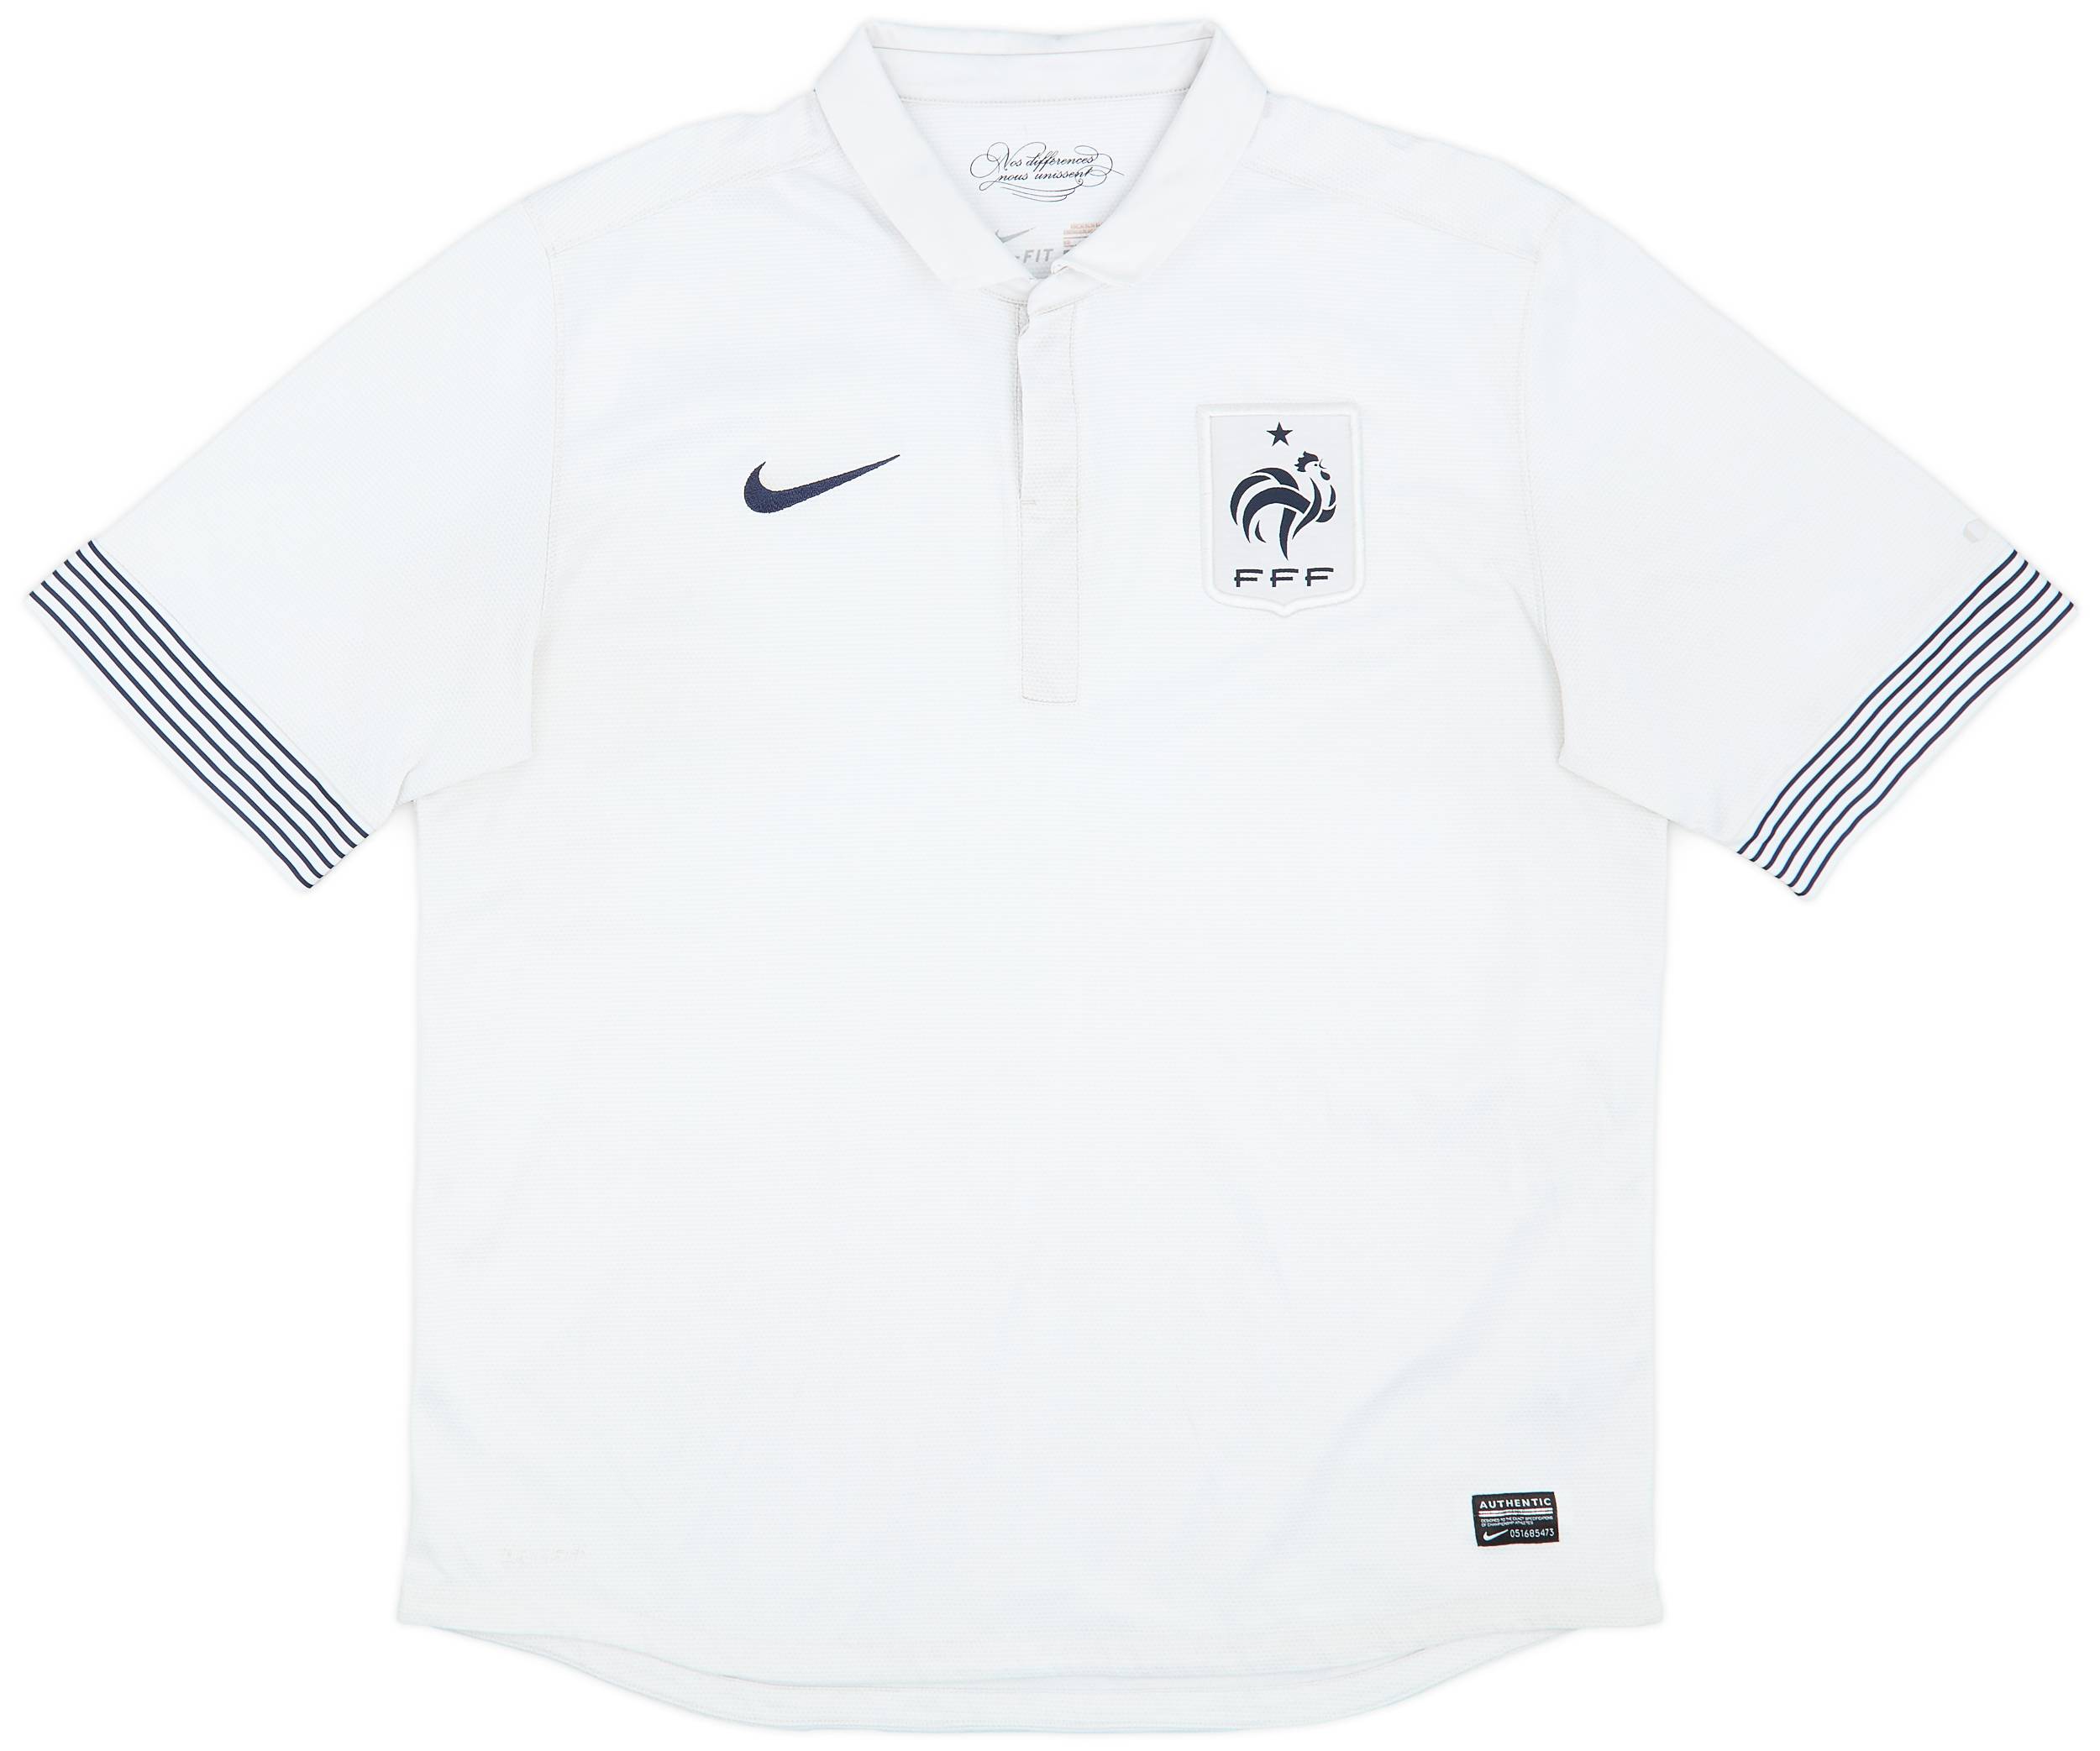 2012-13 France Away Shirt - 6/10 - (XL)